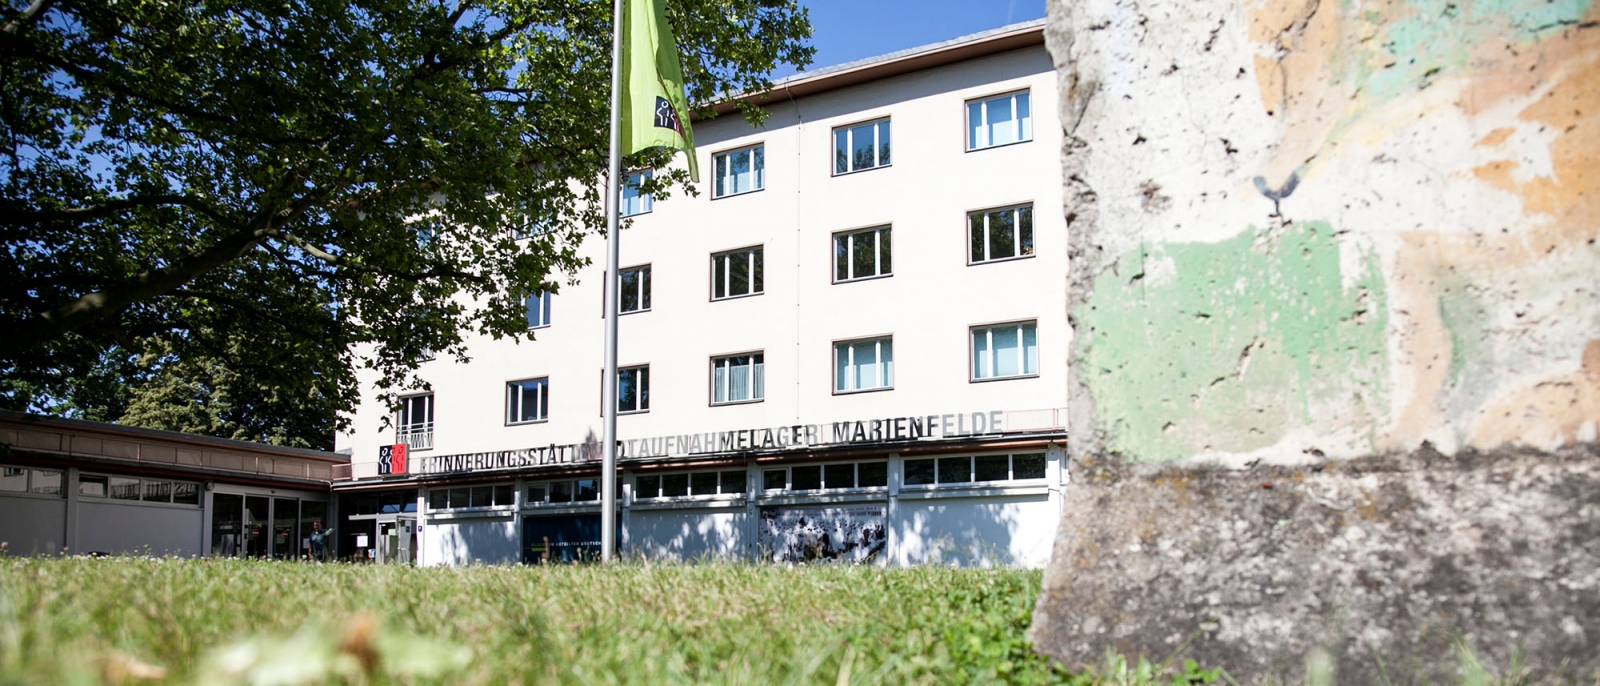 Die Erinnerungsstätte Notaufnahmelager Marienfelde